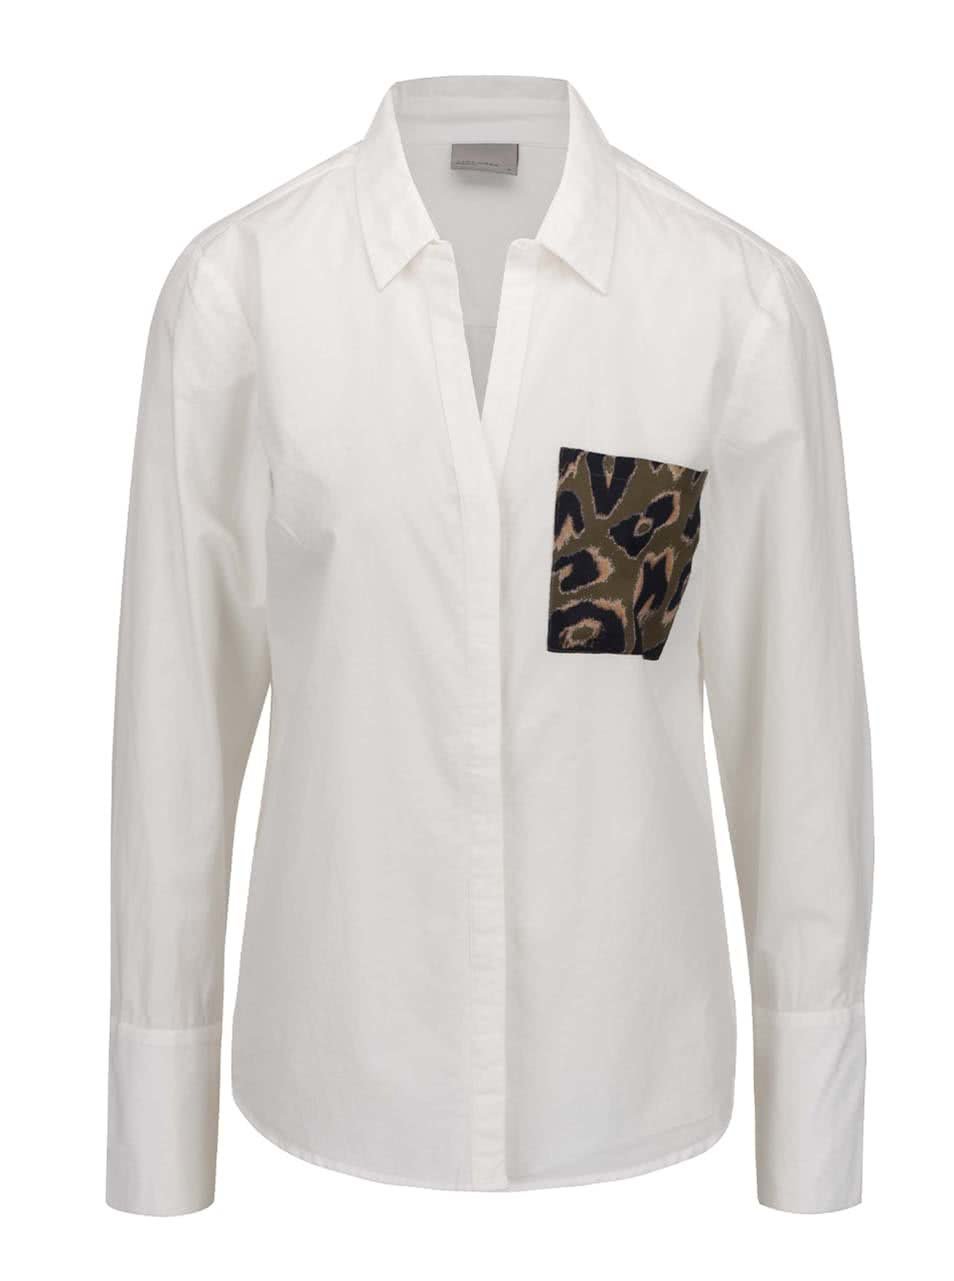 Krémová košile s vzorovanou kapsou Vero Moda Dina